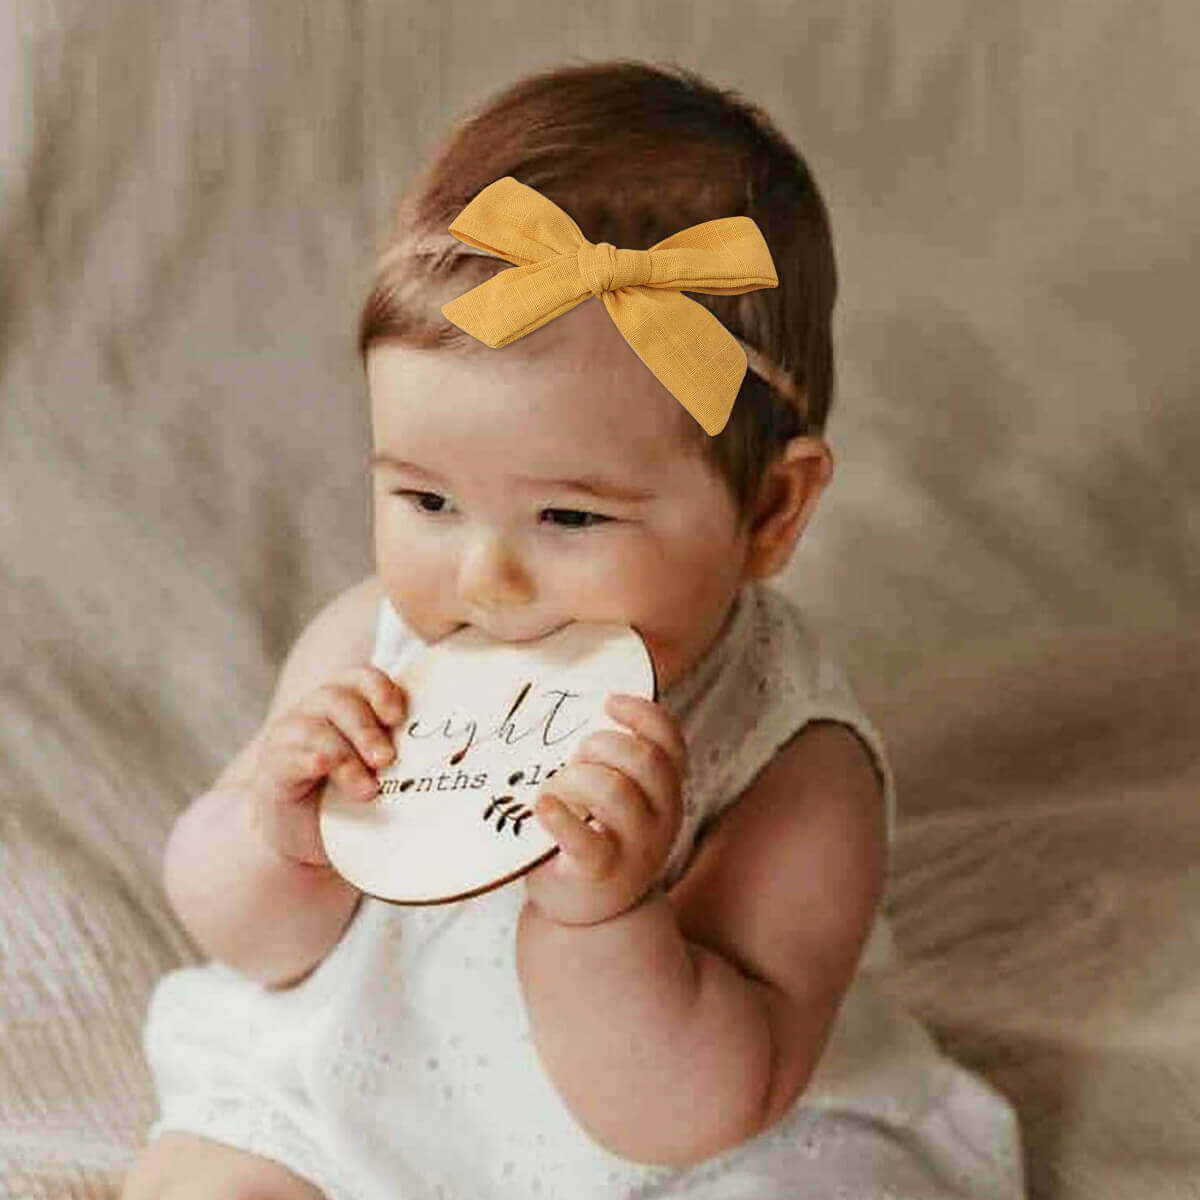 5PCS Cute Bow Baby Nylon Headbands